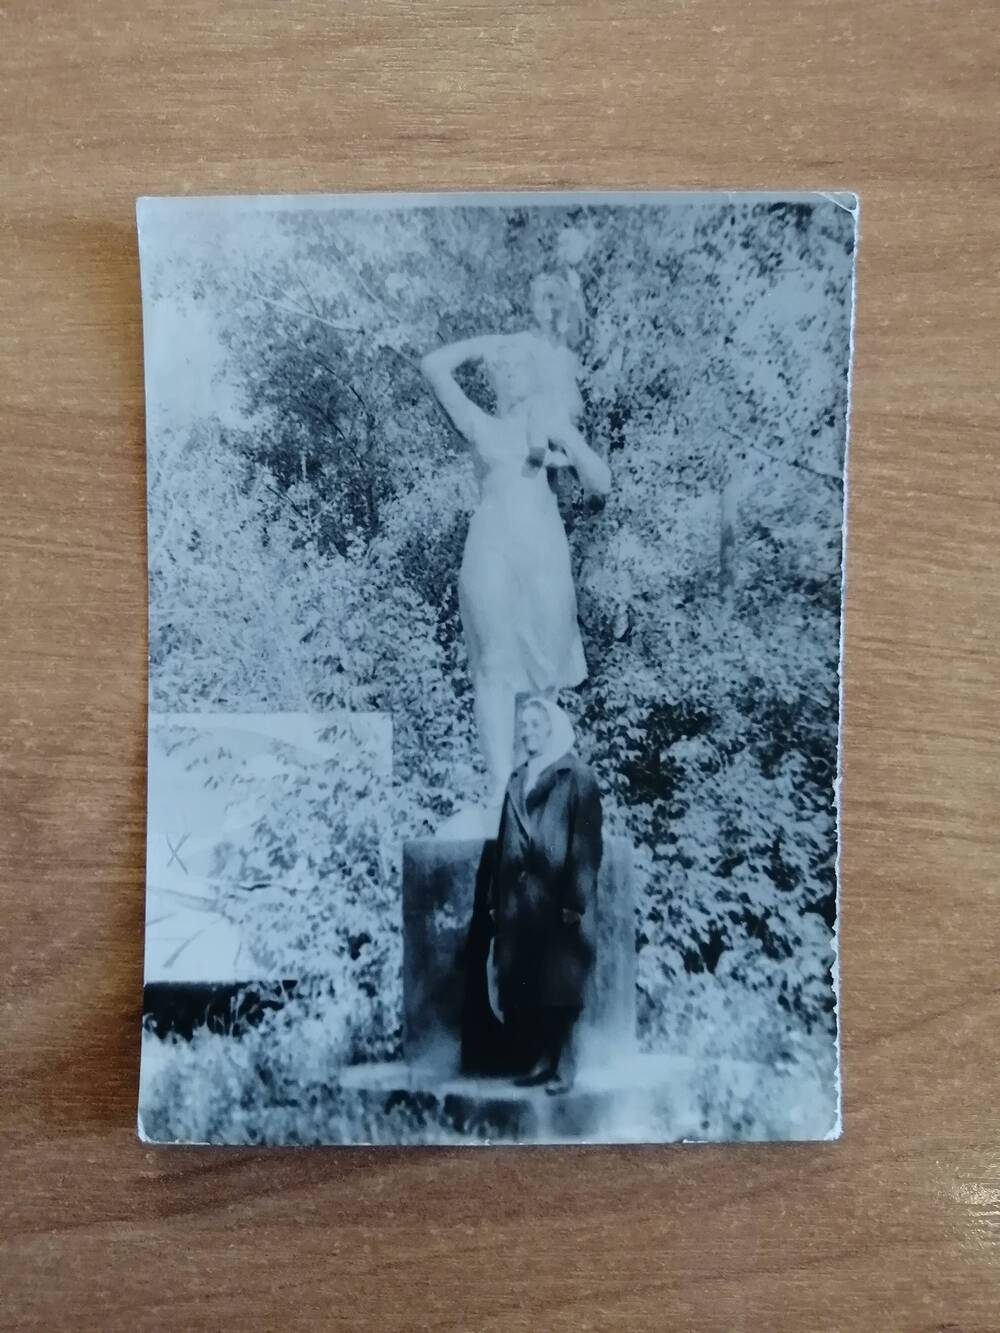 Фотография. Кочнева Мария Павловна в городском парке Камня-на-Оби, на месте, где находился родительский дом.